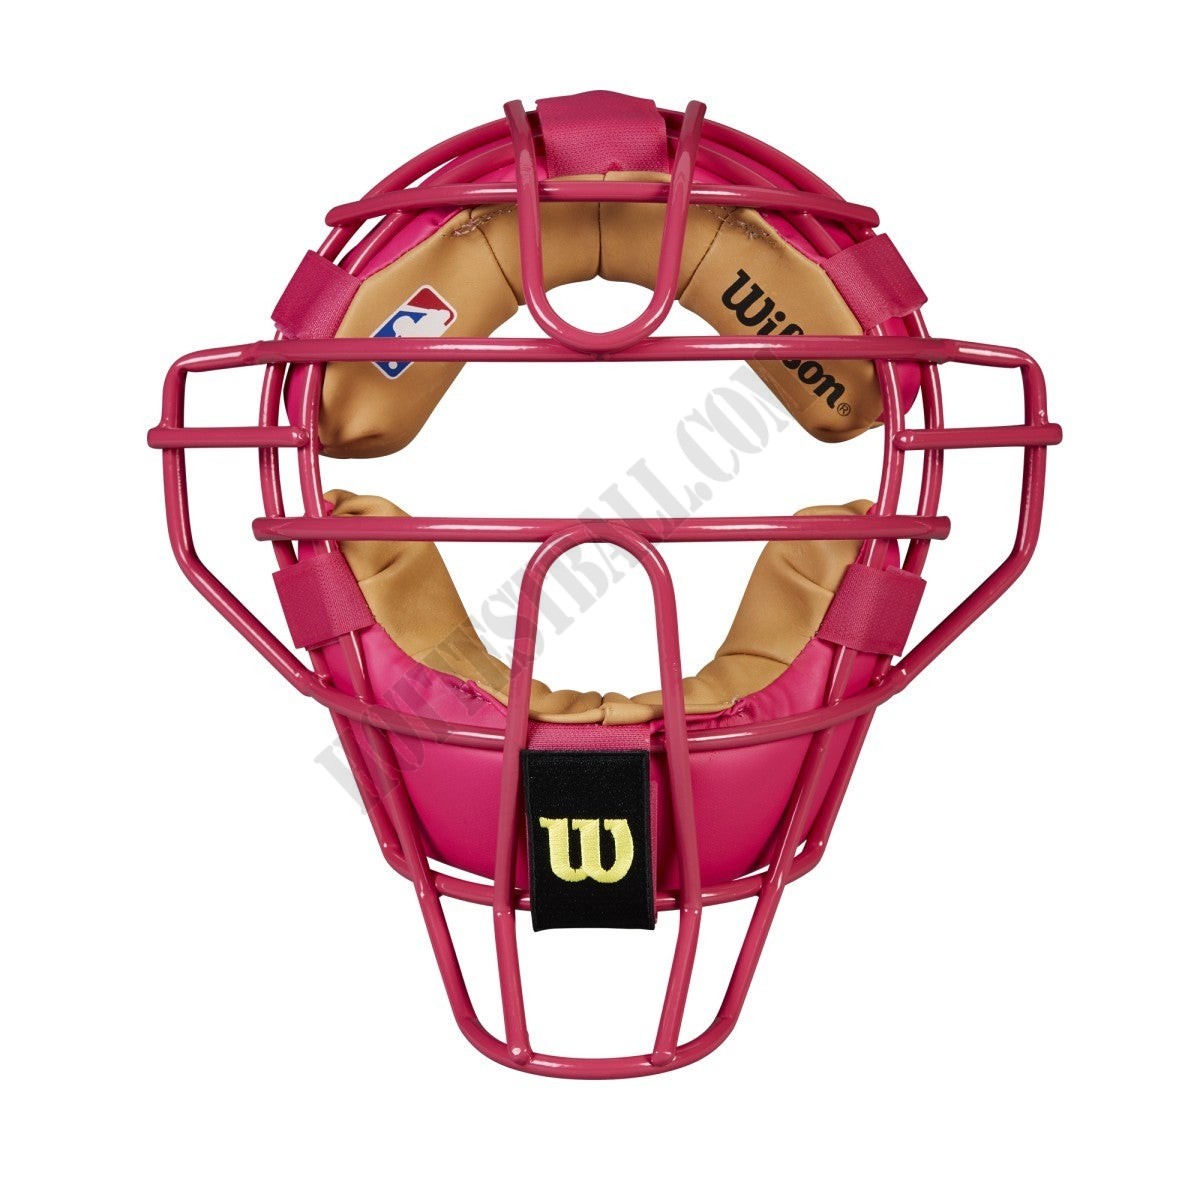 Wilson DYNA-LITE Steel Pink Umpire Mask - Wilson Discount Store - Wilson DYNA-LITE Steel Pink Umpire Mask - Wilson Discount Store